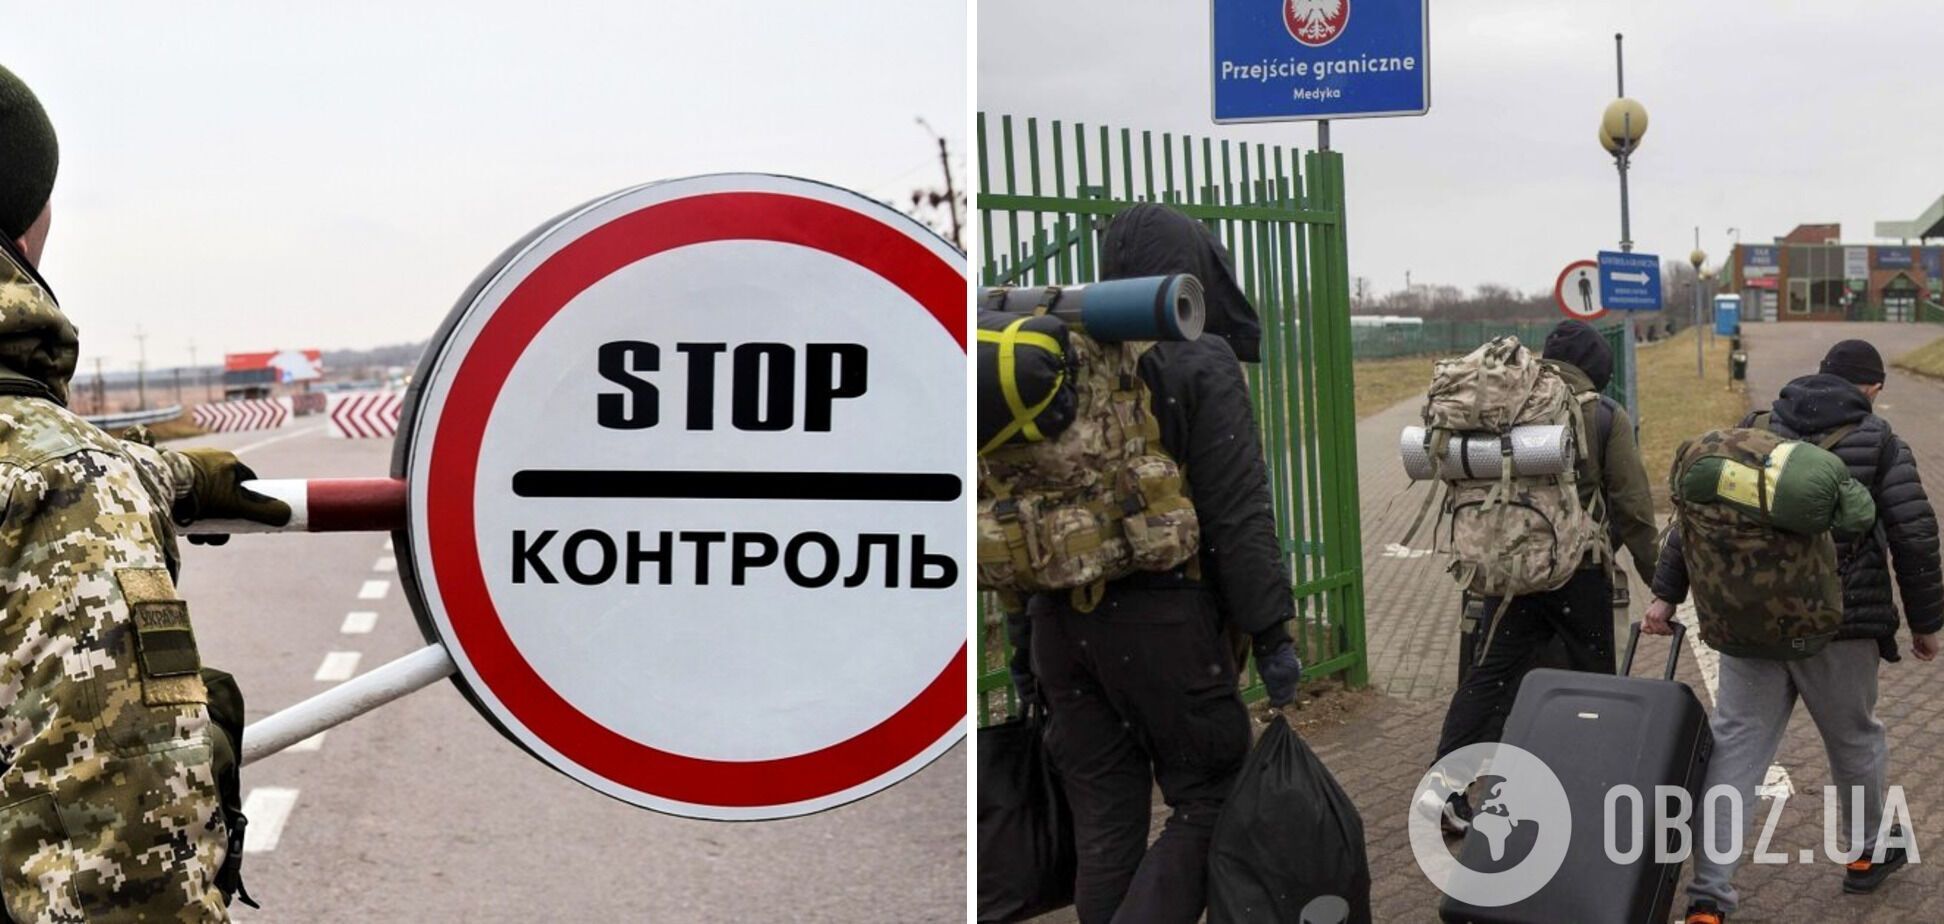 Яке покарання загрожує чоловікам, які незаконно виїхали з України після оголошення воєнного стану: роз'яснення